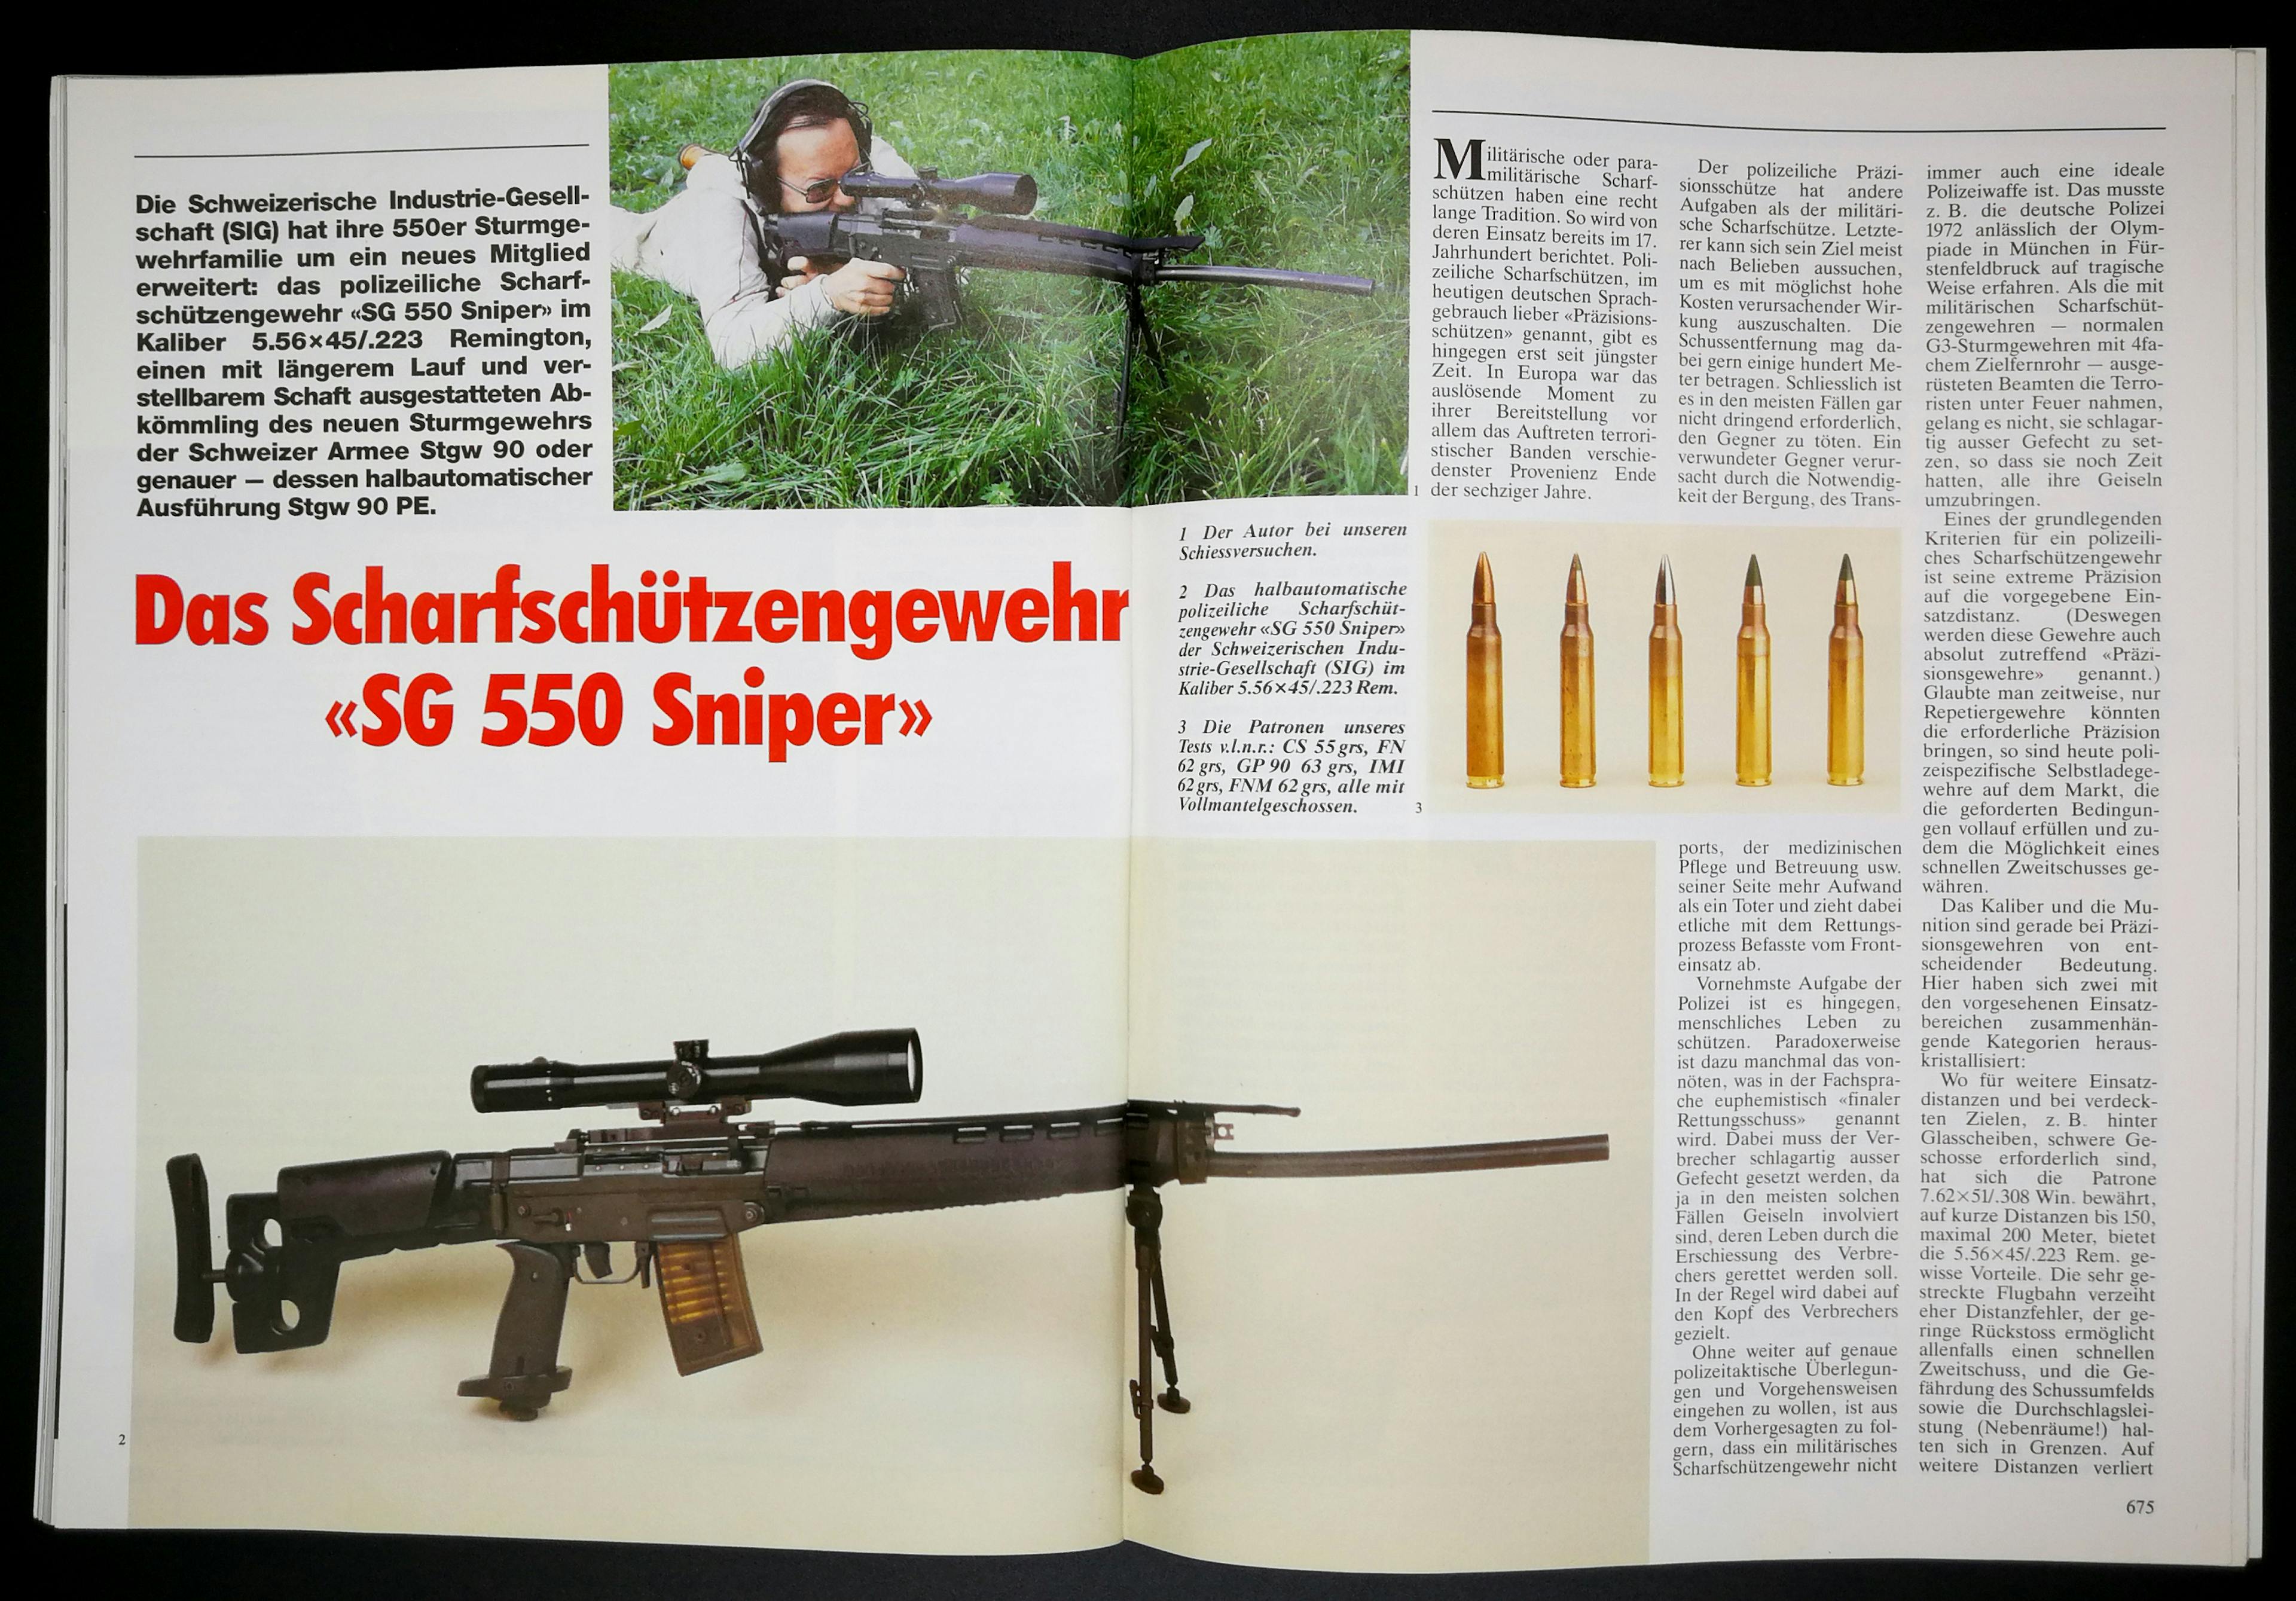 Ein Scharfschützengewehr in 5.56mm mag nicht jedem sinnvoll erscheinen. Trotzdem gibt es das SIG 550 Sniper. Mit verstellbaren Schaft, ergonomischen Pistolengriff, Flimmerband, ZF-Halterung, anderem Zweibein und 153mm längerem Lauf.
